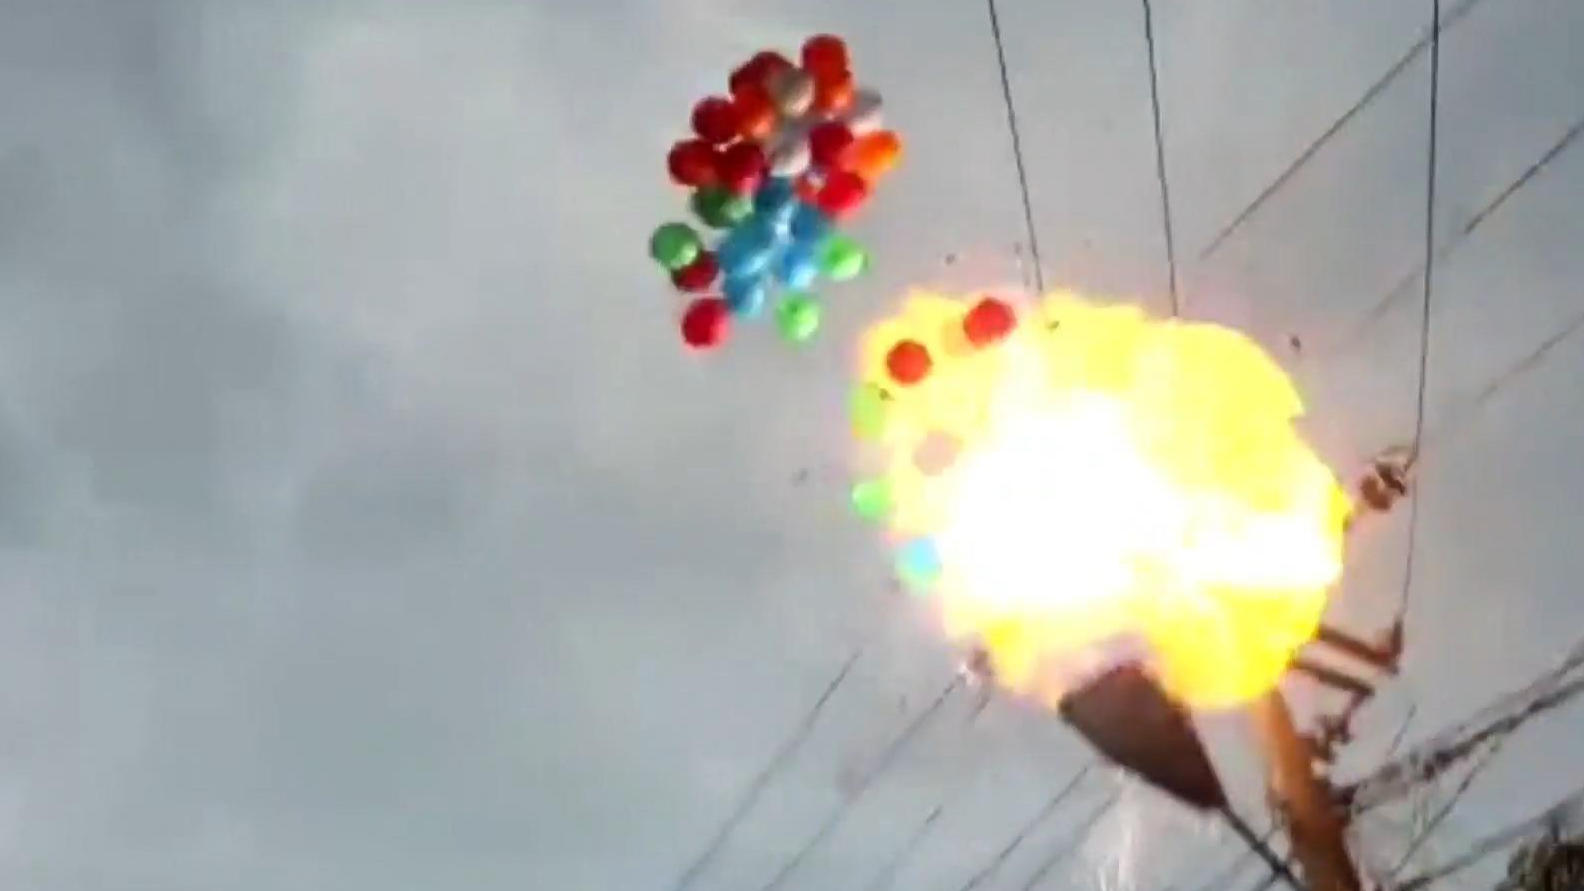 Indonesien: Riesen-Explosion durch bunte Ballons XXL-Feuerball bei Zeremonie